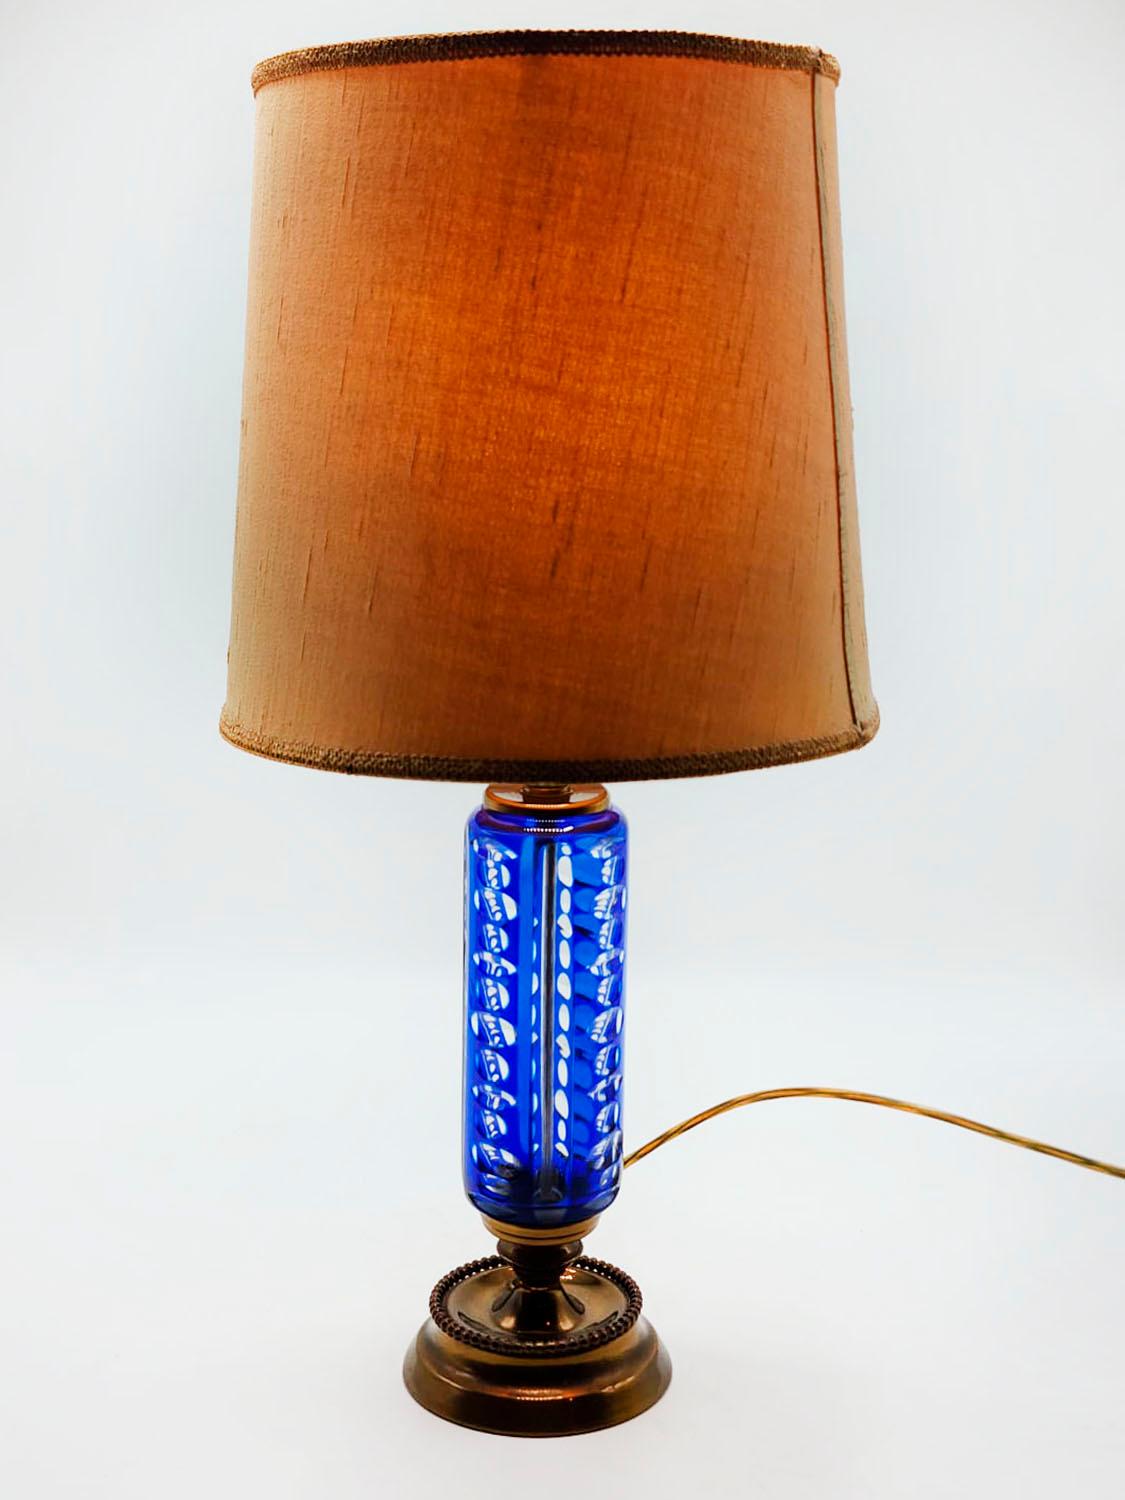 Tischlampe aus blauem und bronzefarbenem Glas aus dem 20. Jahrhundert

Unverwechselbare Art-Déco-Tischlampe aus geschliffenem Glas mit blauer Farbe und Bronzesockel, aus der Mitte des 20. Jahrhunderts, perfekt für die Dekoration in einem klassischen